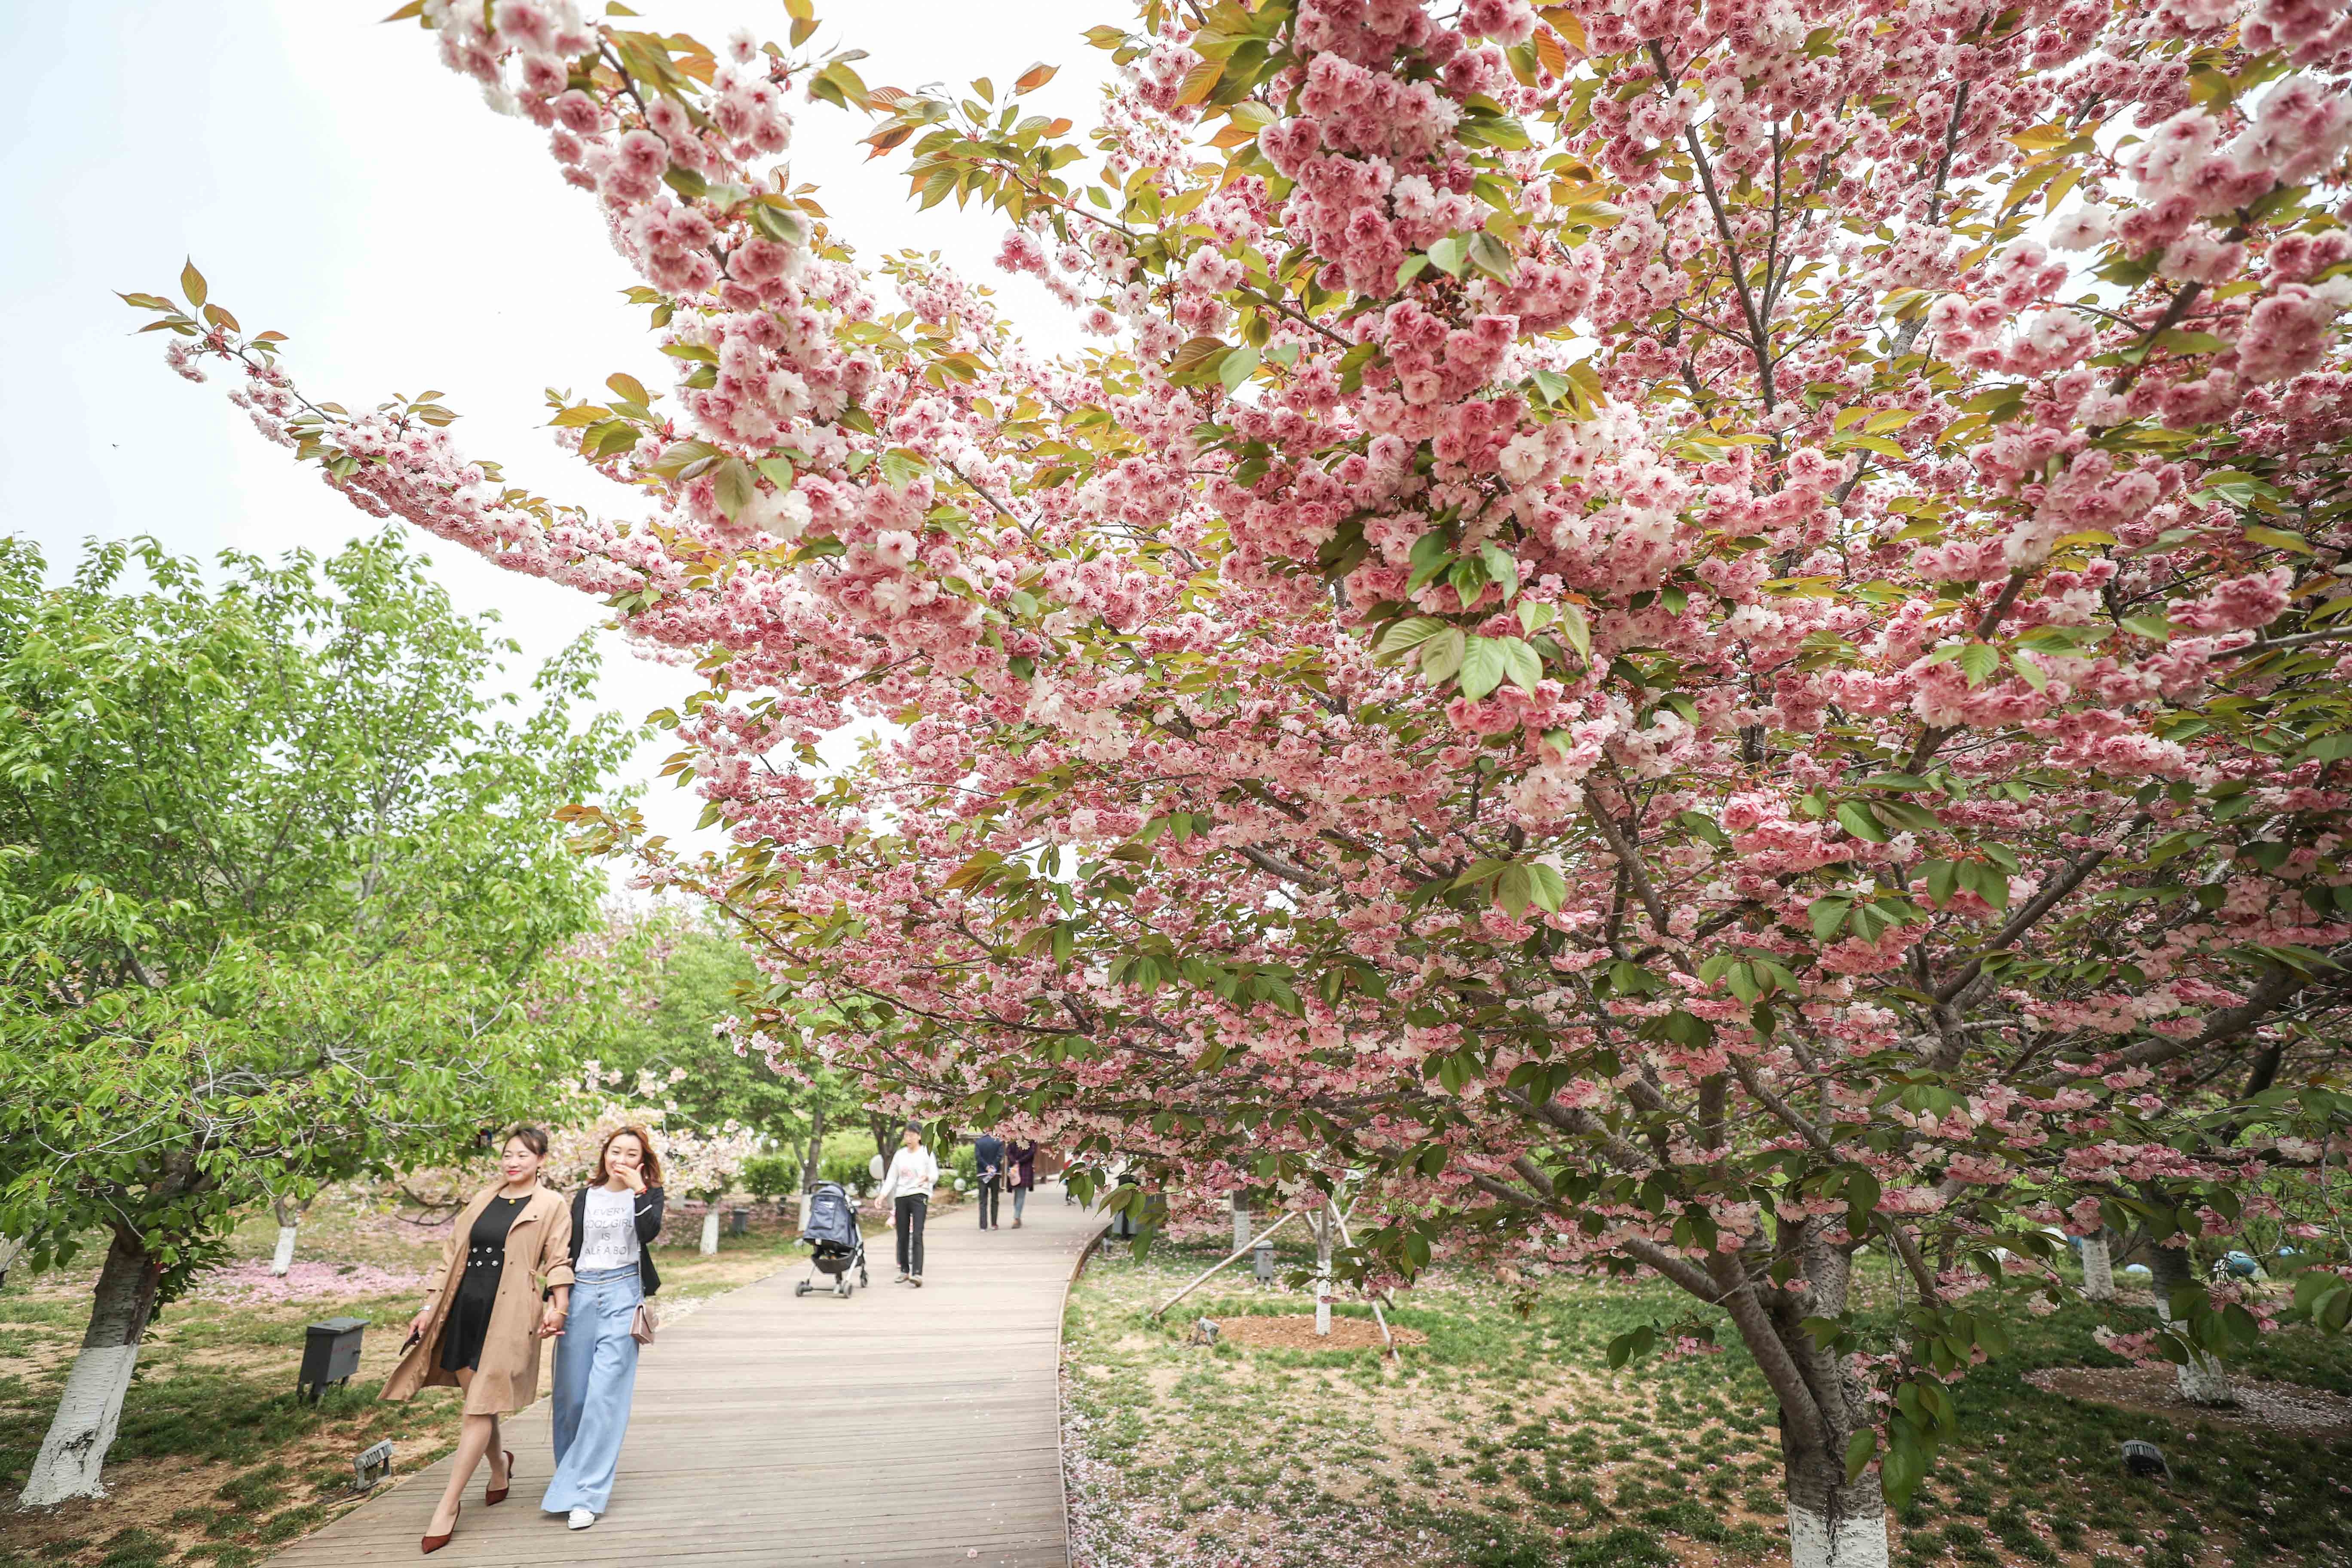 时下,辽宁大连市旅顺口区二零三樱花园正值花期,盛开的樱花吸引游客前